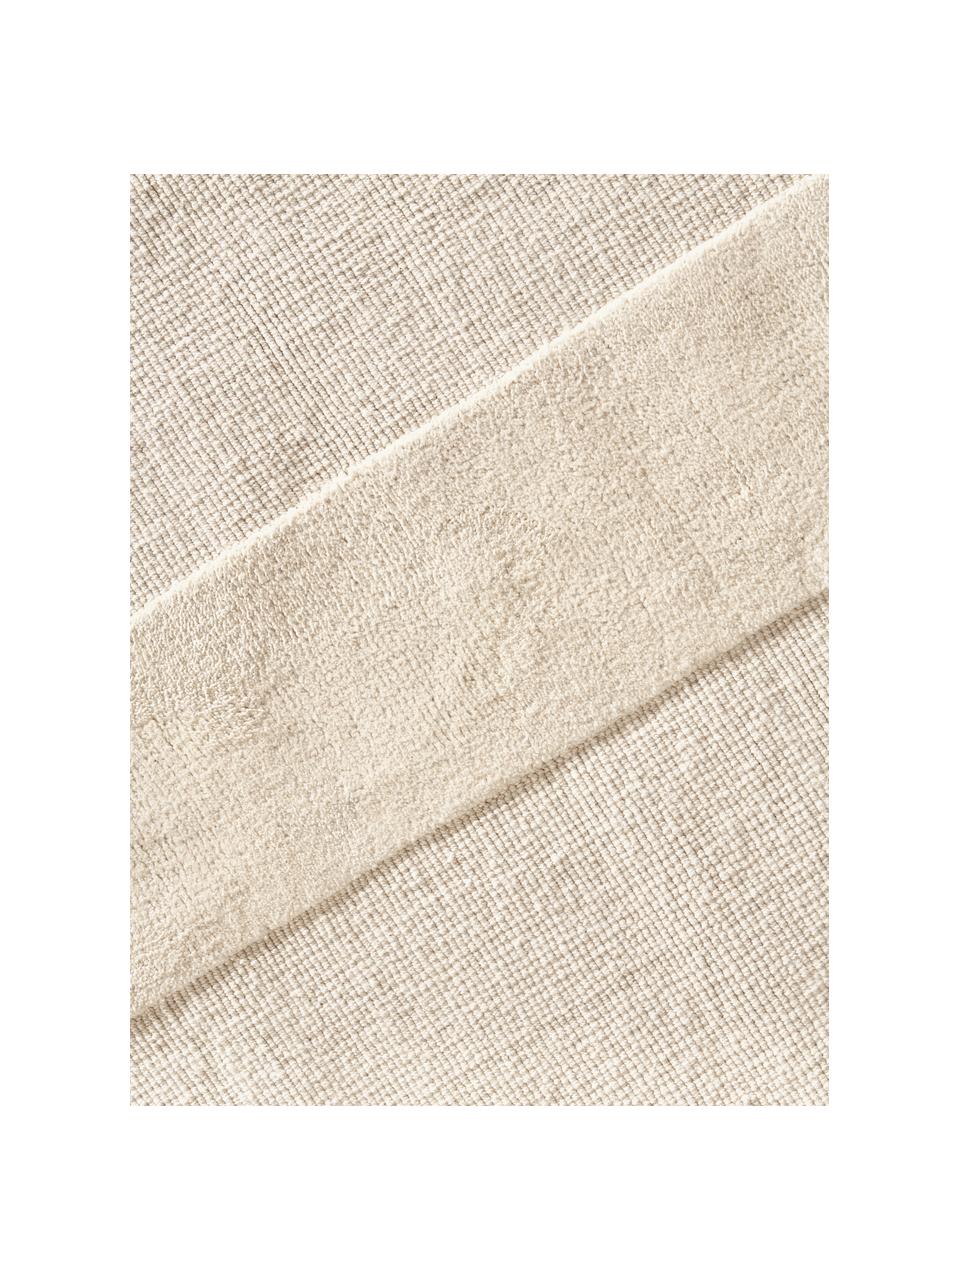 Handgewebter Baumwollteppich Dania mit Hoch-Tief-Struktur, 100 % Baumwolle, Cremeweiss, B 200 x L 300 cm (Grösse L)